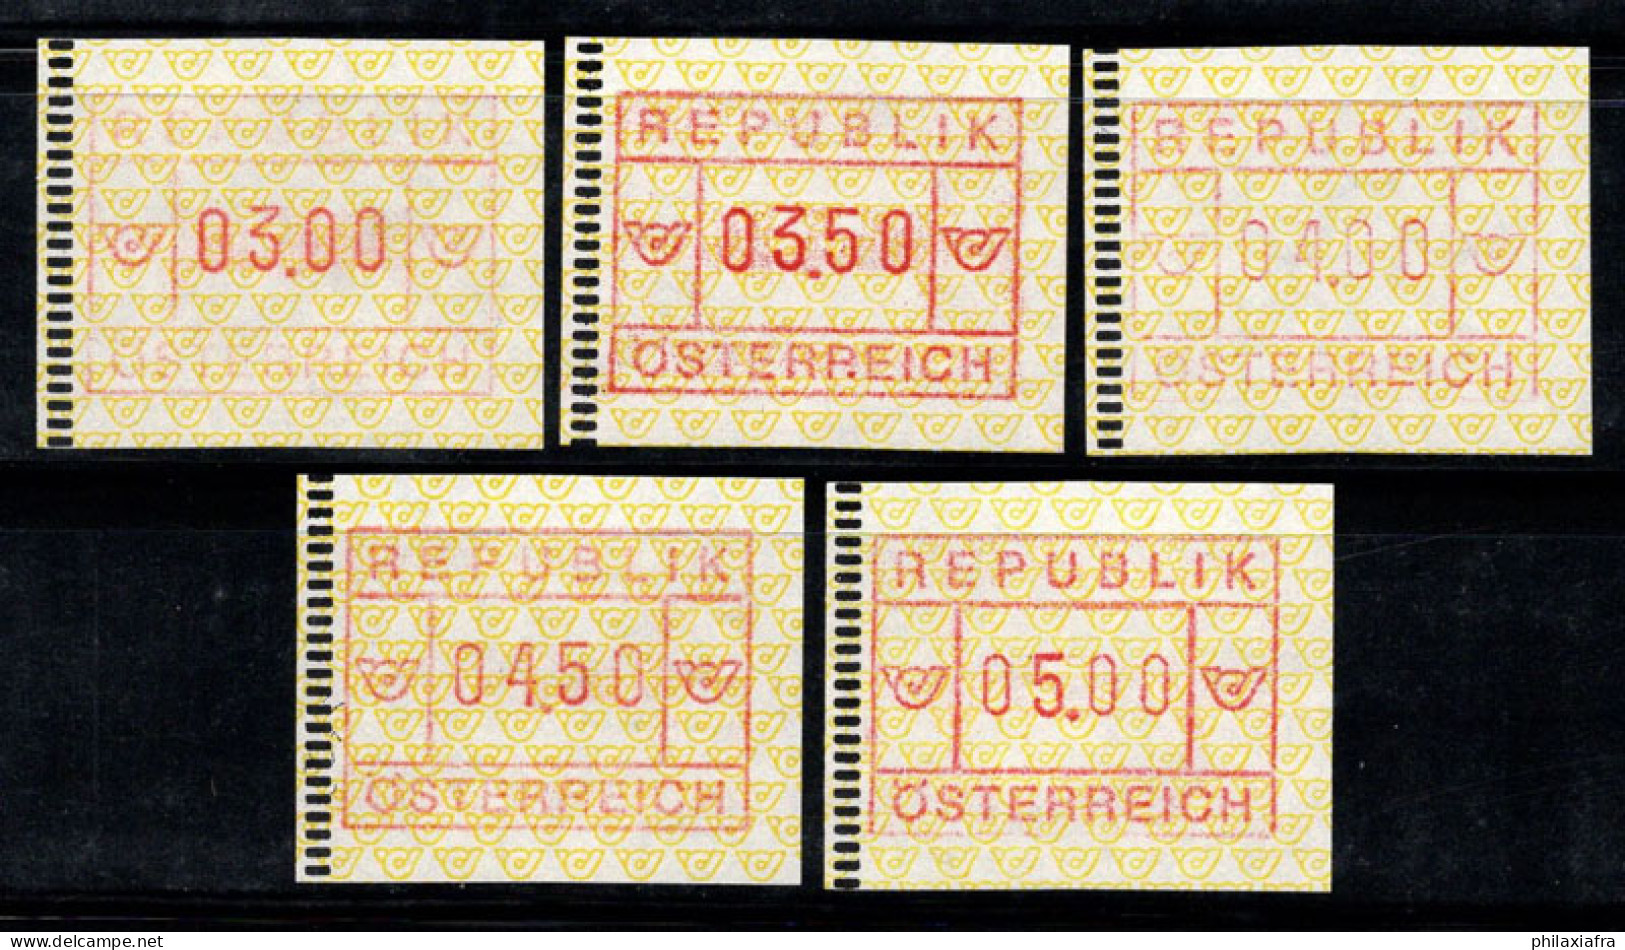 Autriche 1988 Mi. 2 Neuf ** 100% ATM 03.00-05.00 - Machines à Affranchir (EMA)